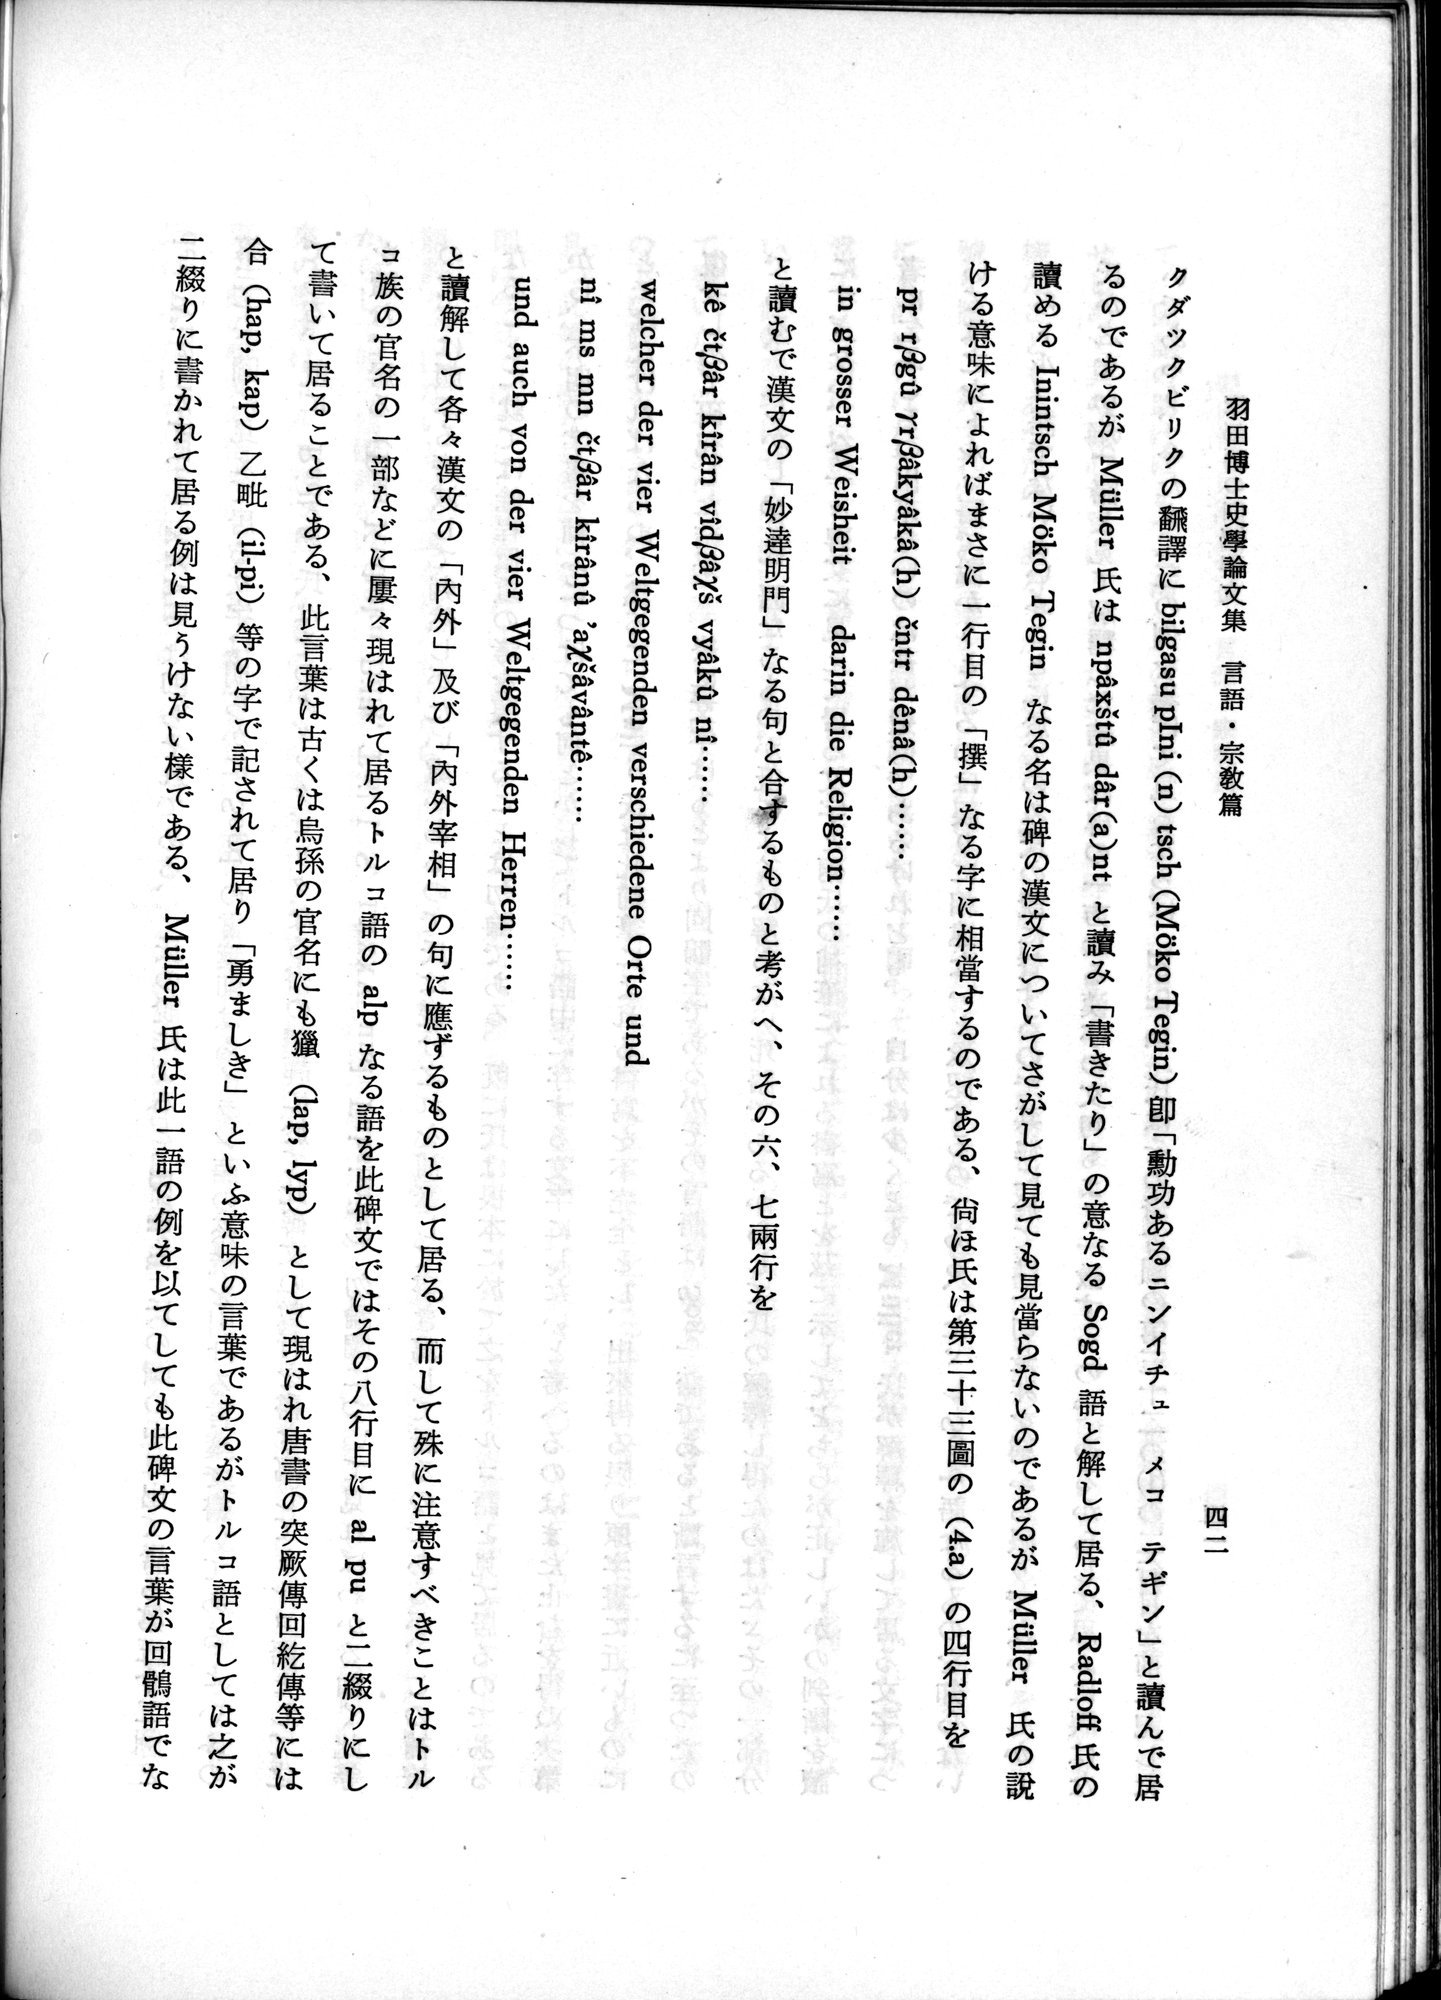 羽田博士史学論文集 : vol.2 / Page 92 (Grayscale High Resolution Image)